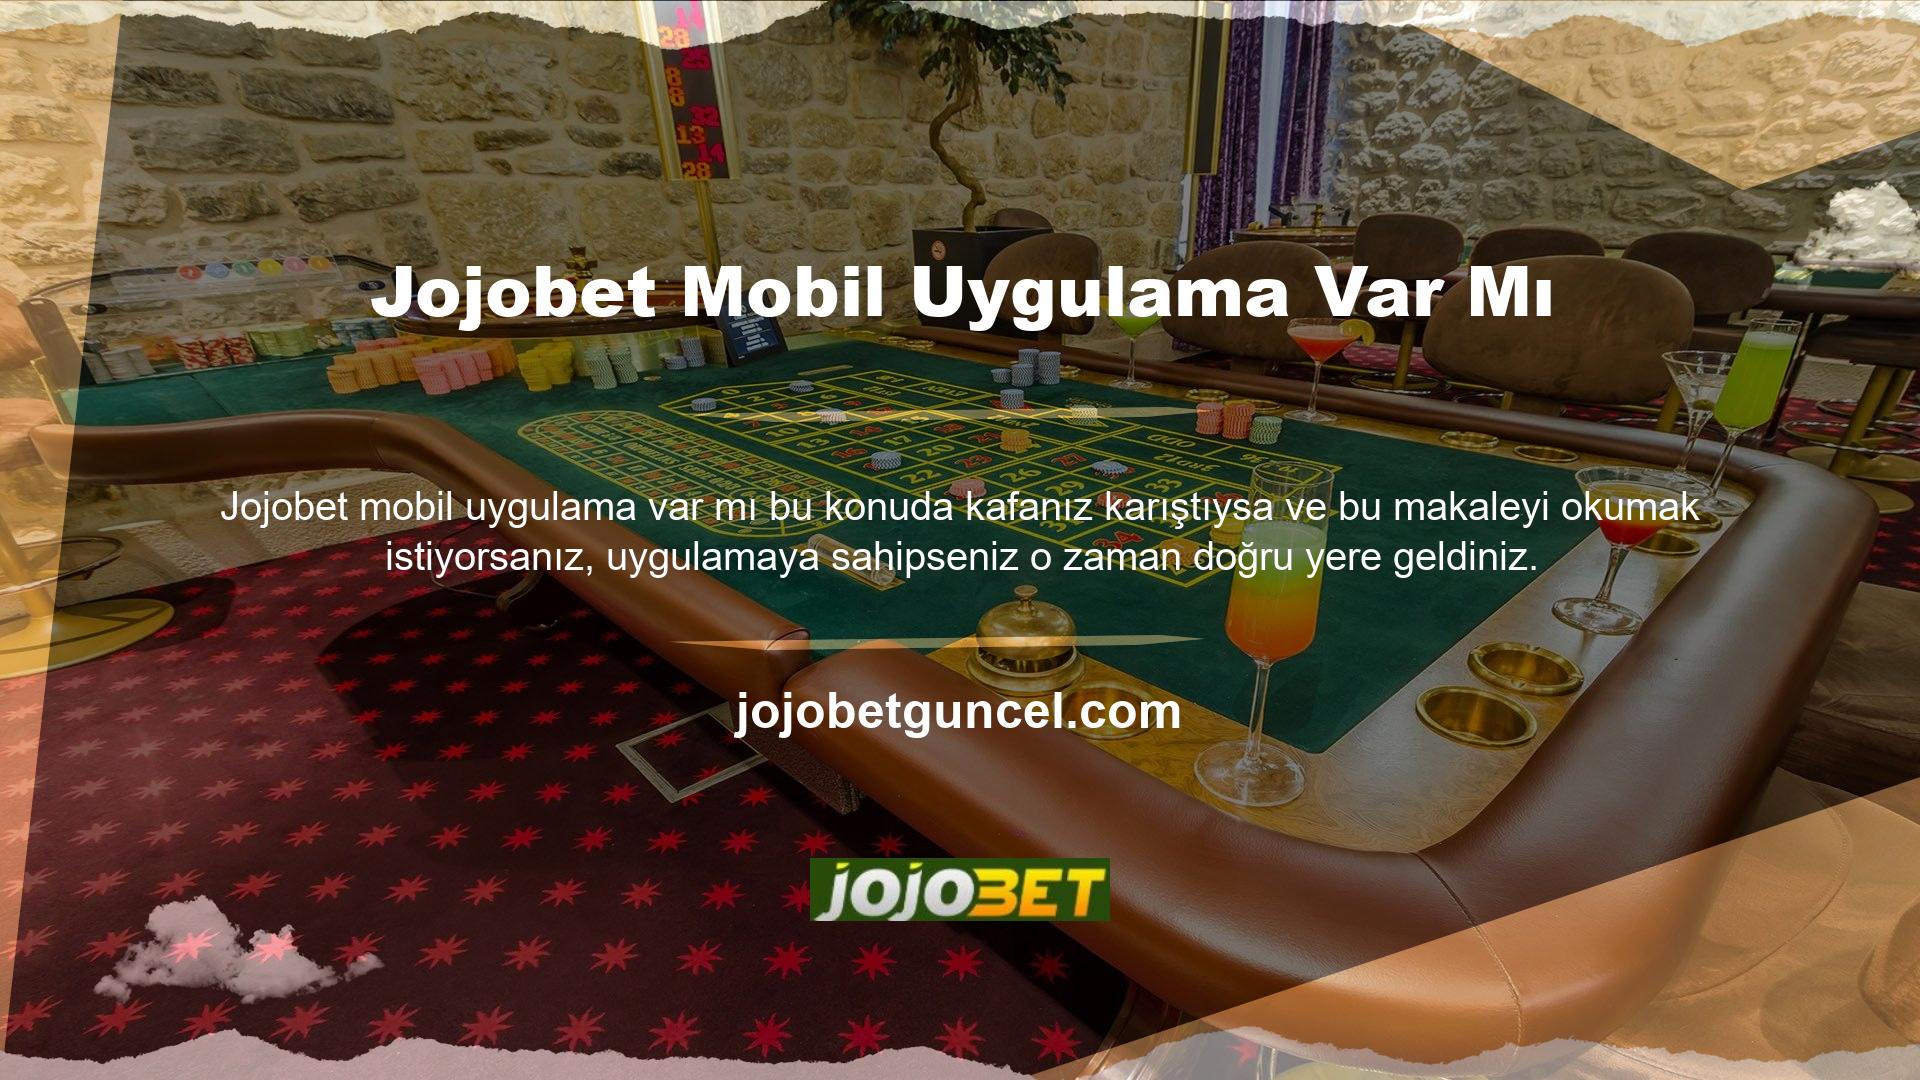 Jojobet Mobil Giriş, duyarlı web sitesi tasarlayarak hizmetine devam etmekte ve kullanıcıların daha fazlasını bilmesini ve hemen aramaya başlamasını sağlamaktadır